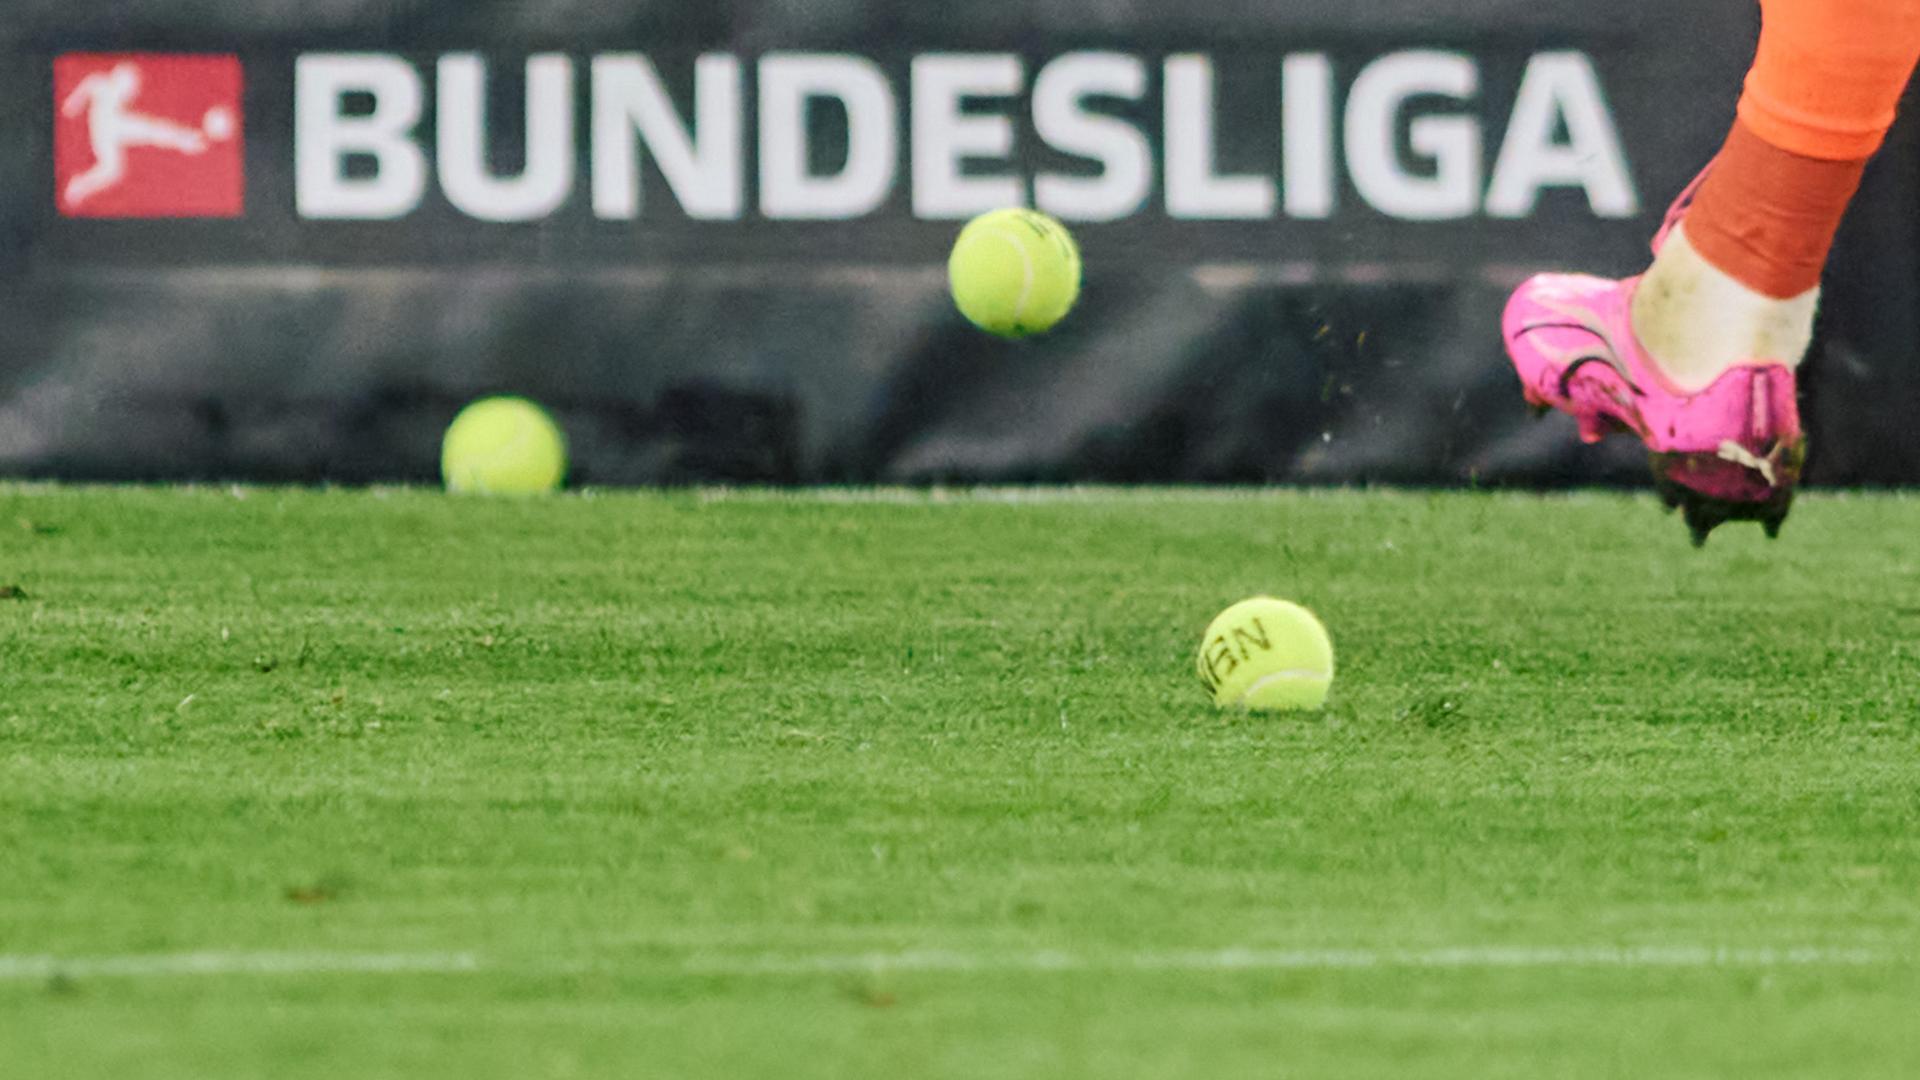 Dortmunds Torwart Gregor Kobel schießt Tennisbälle vom Platz, die Fans aus Protest gegen Investoren in der DFL auf das Spielfeld geworfen haben.